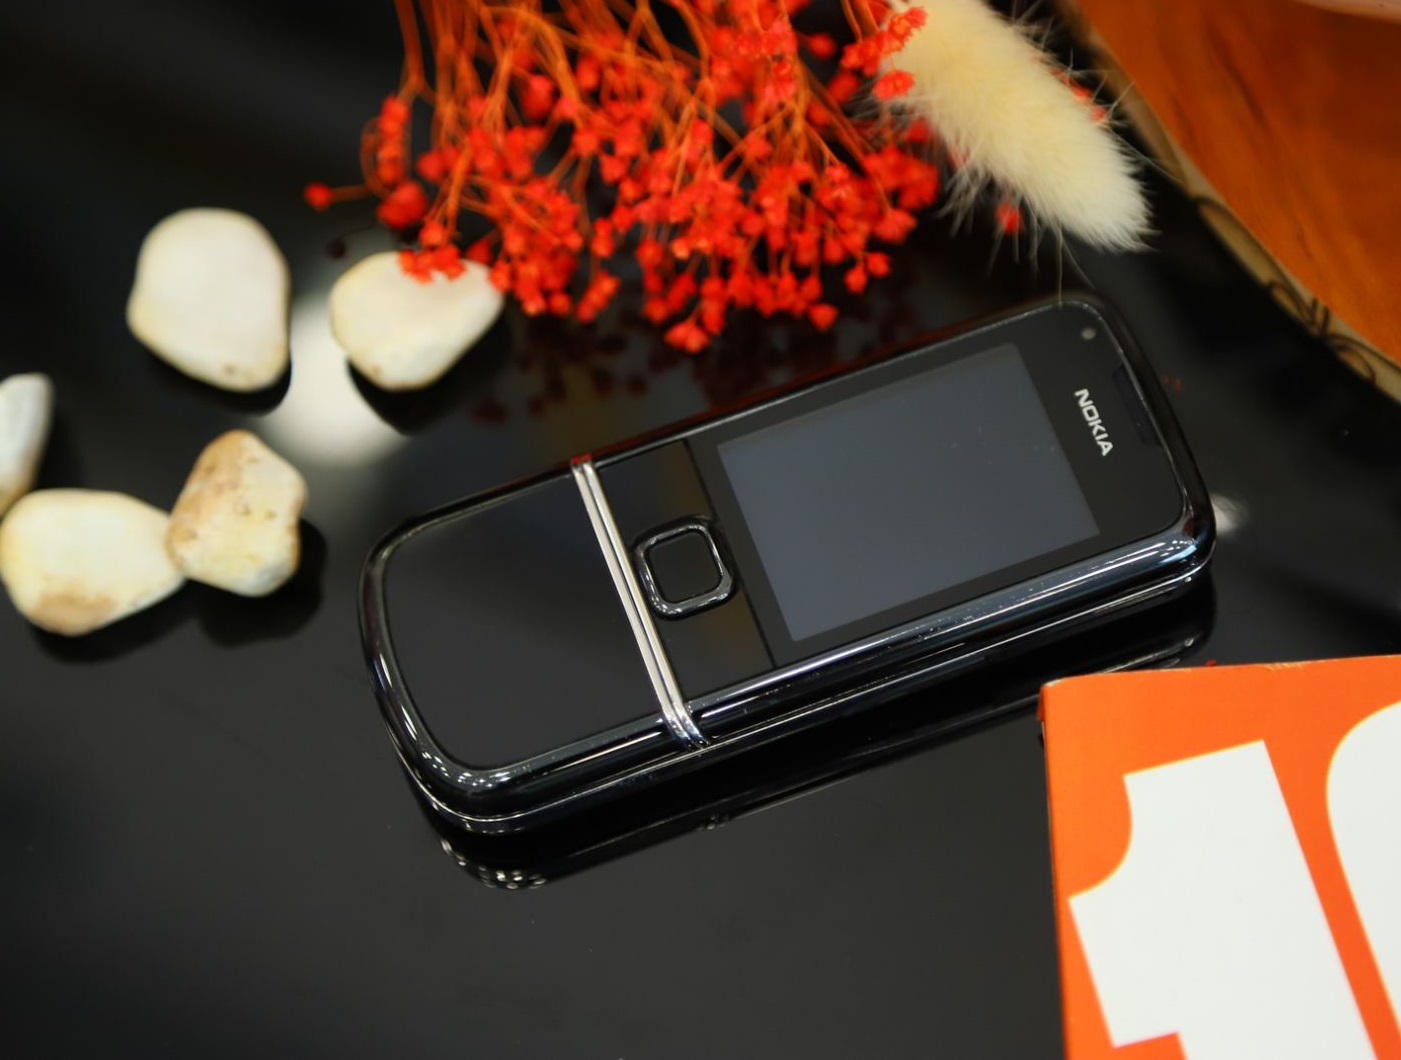 Nokia 8800E Sapphire Arte Black Hình Thức 95% - Nokia 8800E Sapphire Arte Black với hình thức 95% đang chờ đón bạn. Với thiết kế cao cấp, bộ vỏ được chế tác từ sapphire và màn hình OLED, chiếc điện thoại này sẽ là niềm tự hào và sự trưởng thành của bạn. Không bao giờ là quá muộn để sỡ hữu chiếc điện thoại này.